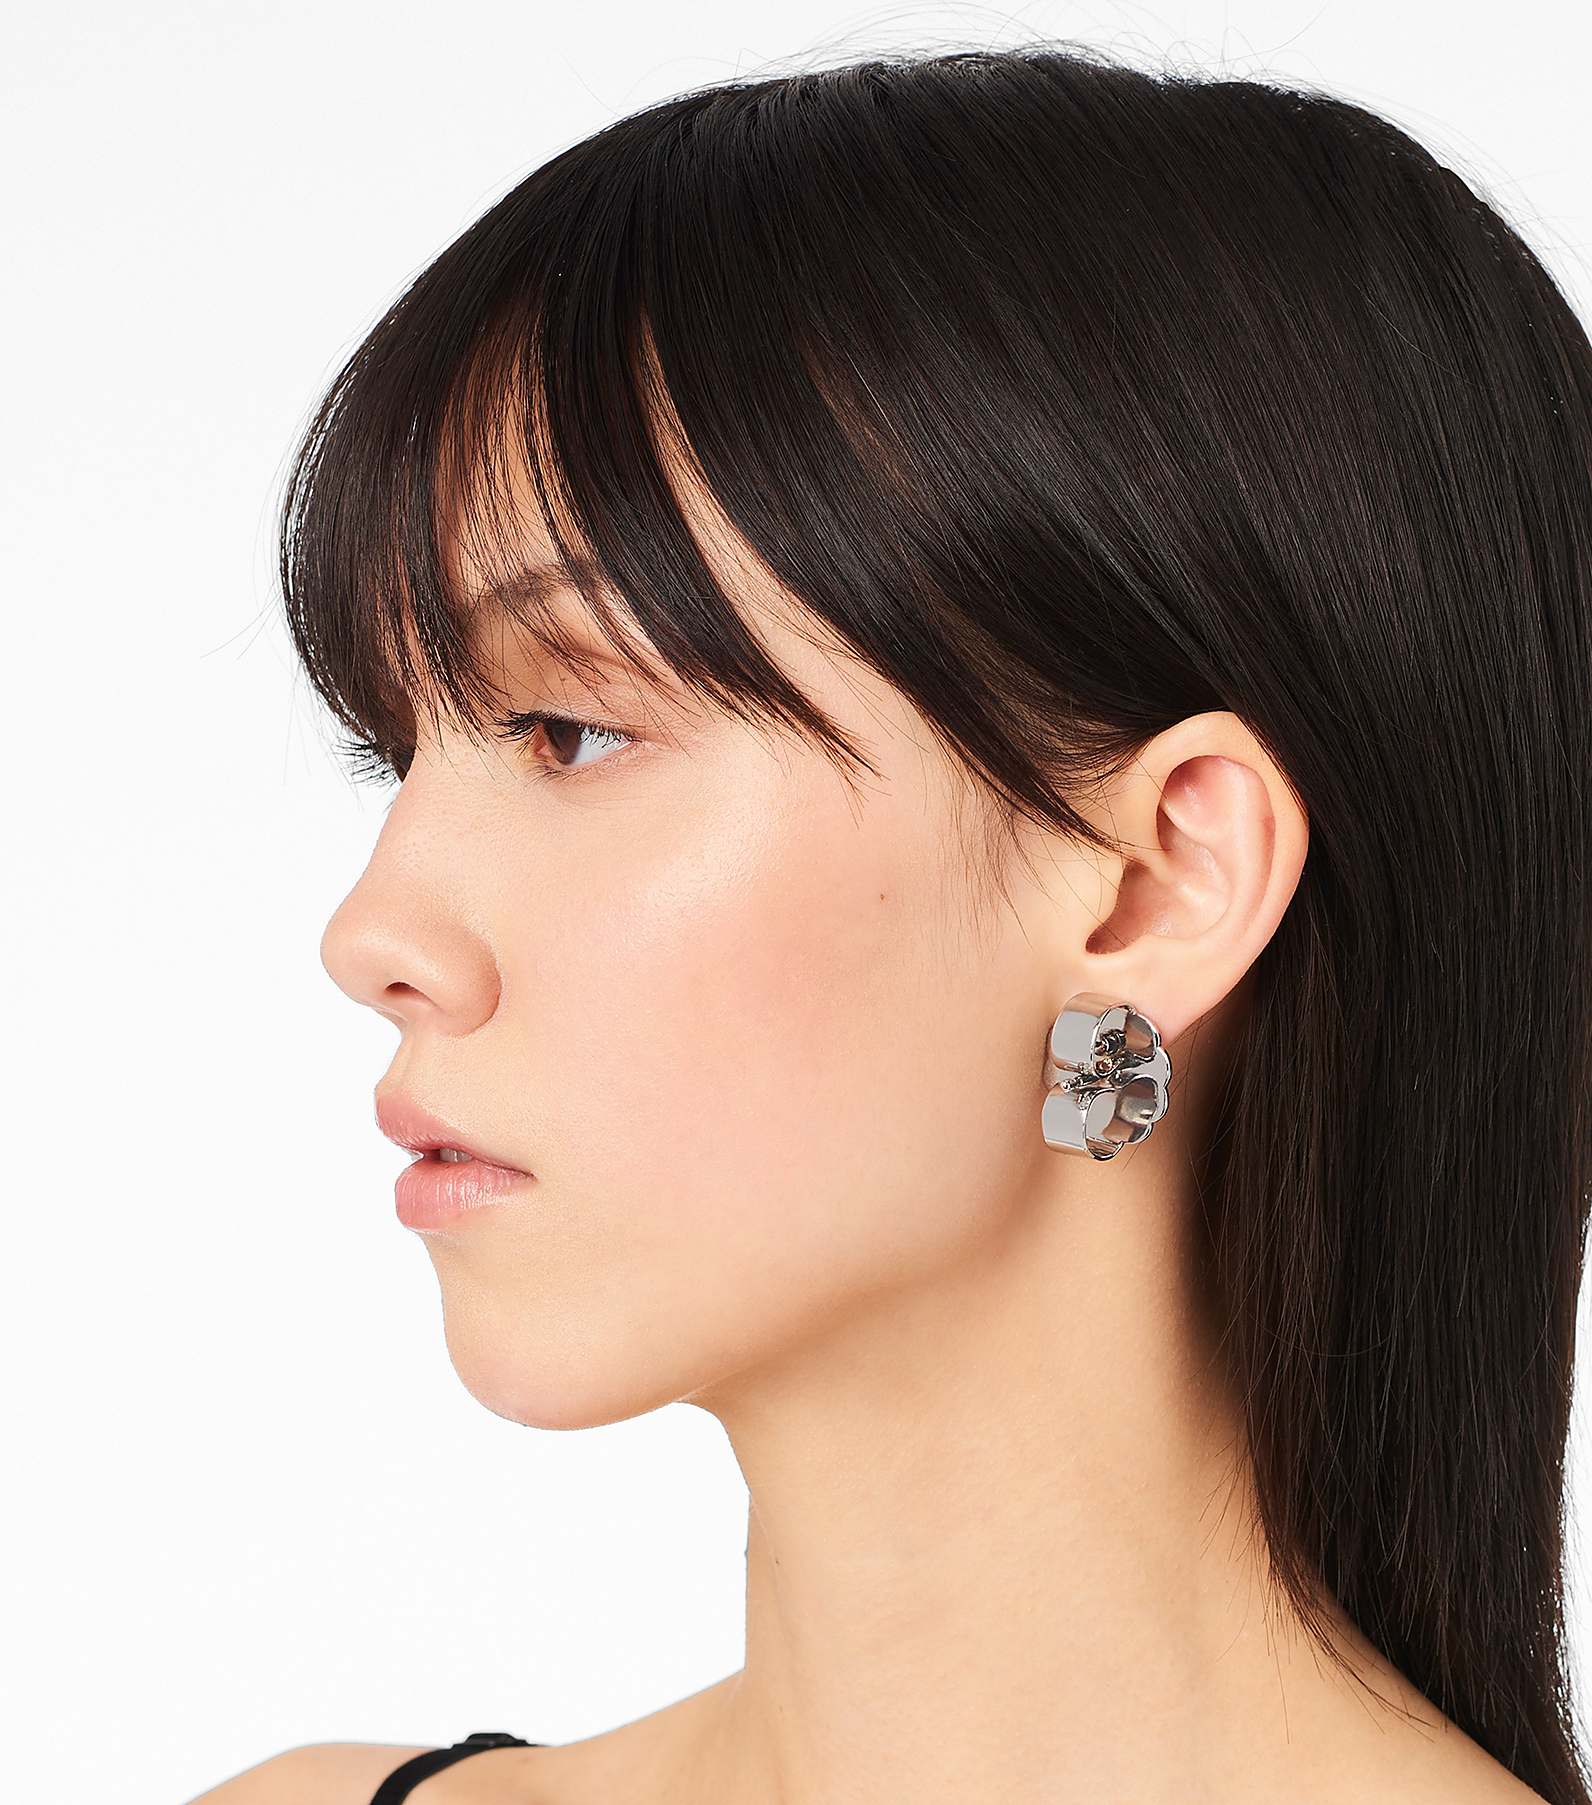 The Charmed Heart Stud Earrings(Earrings)